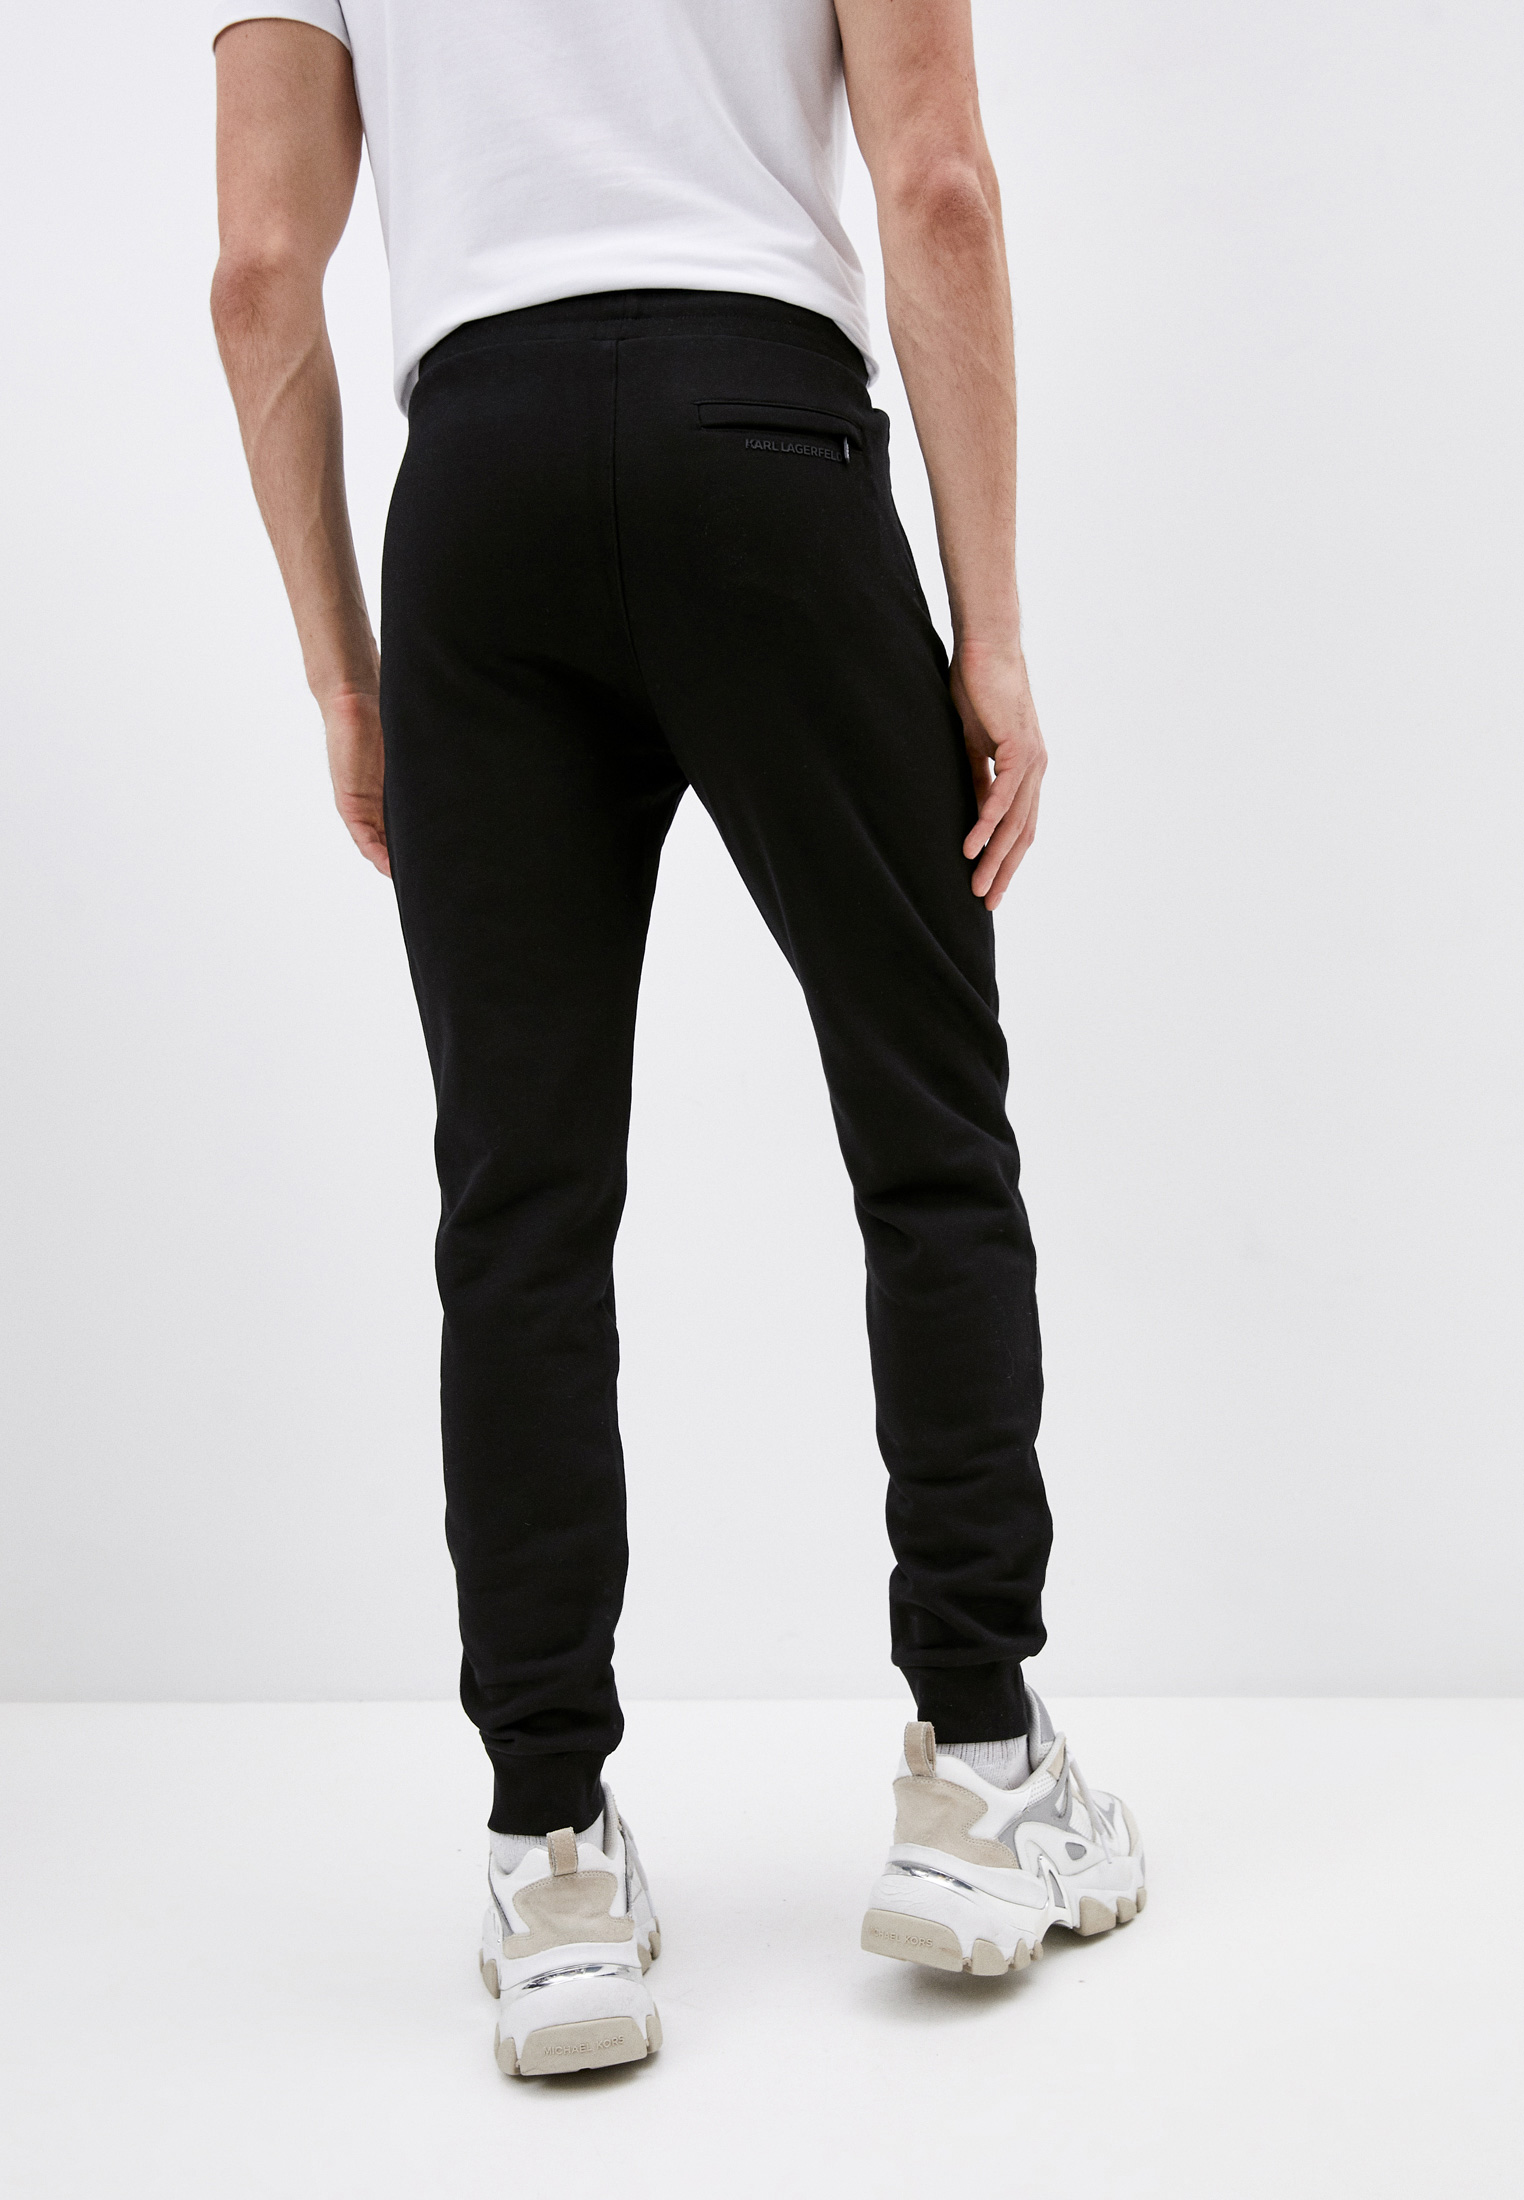 Мужские спортивные брюки Karl Lagerfeld (Карл Лагерфельд) 705005 511900: изображение 3